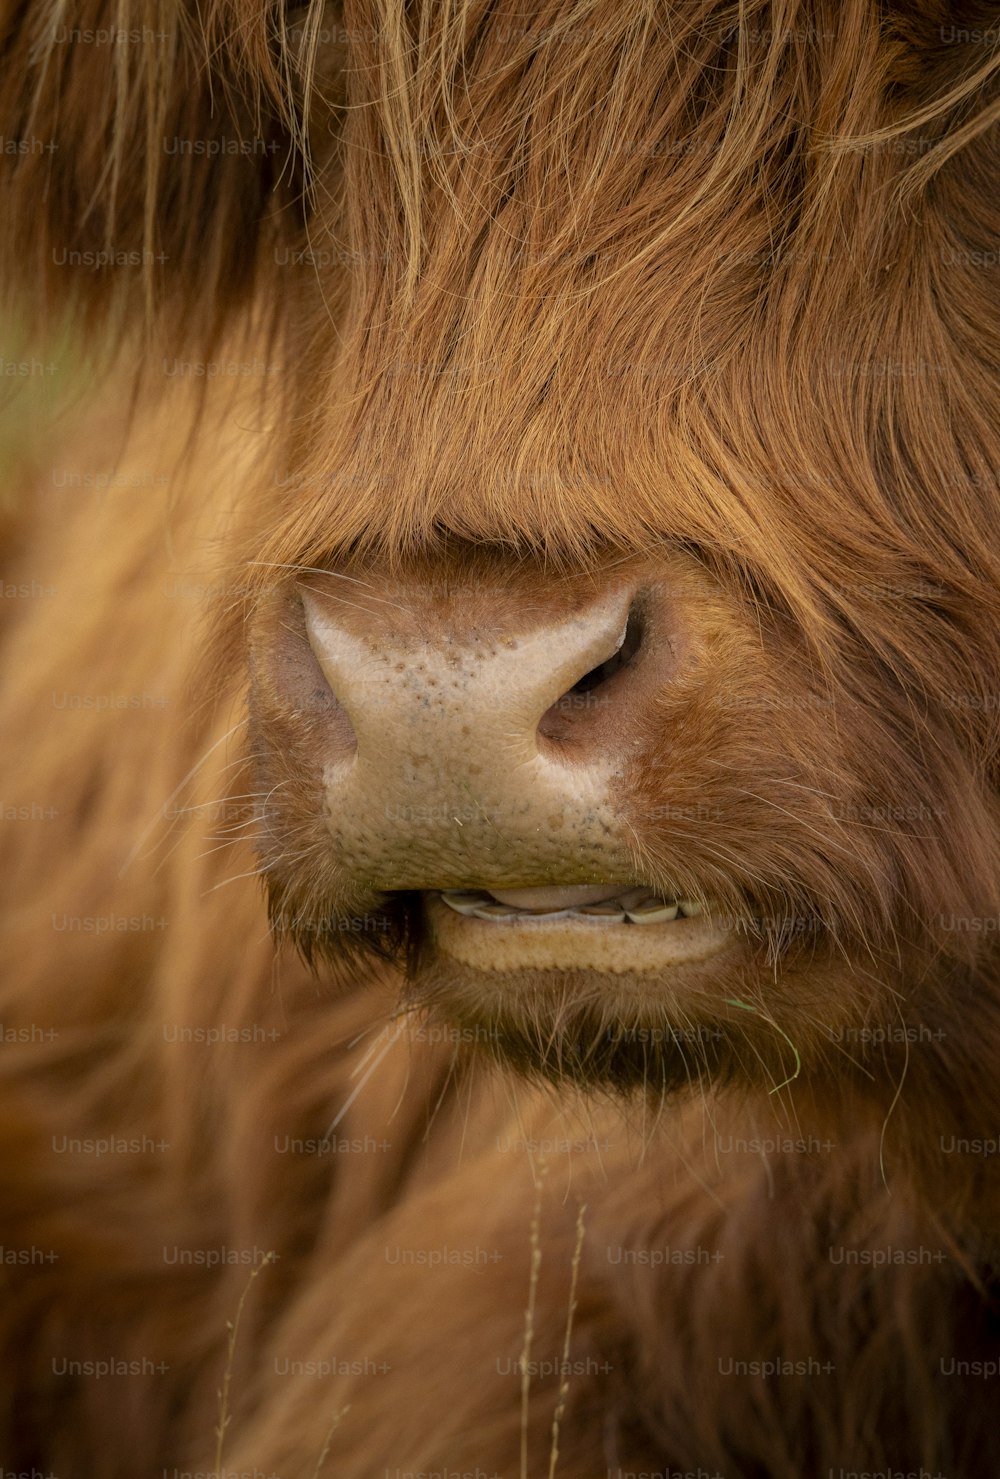 Un primer plano de la cara de una vaca marrón